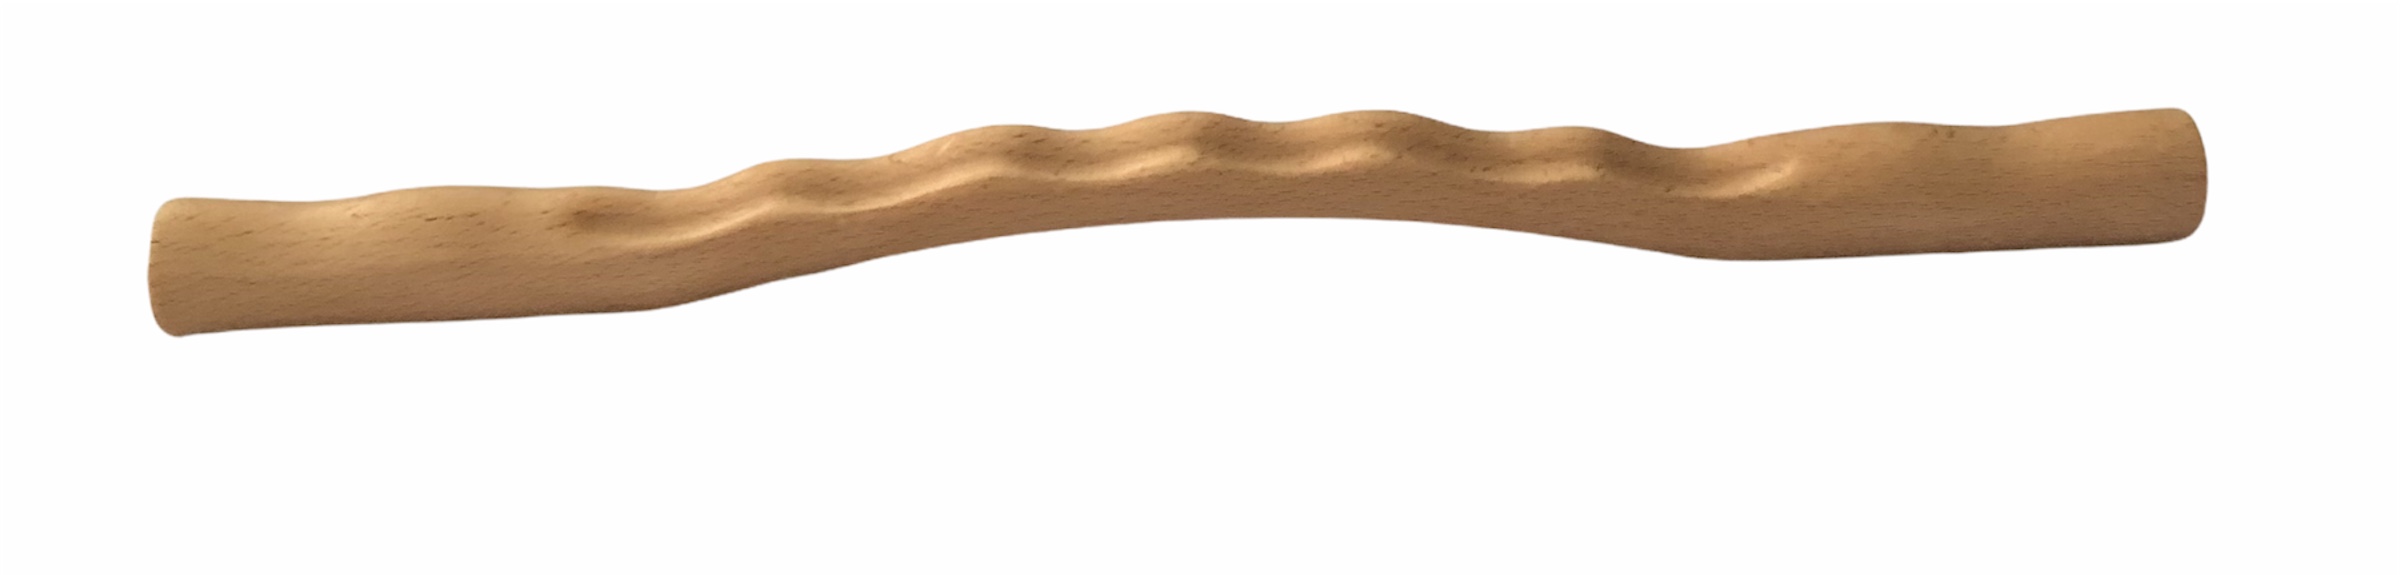 GUA SHA masážna palica je určená pre spaľovanie tuku, celulitídu, strie